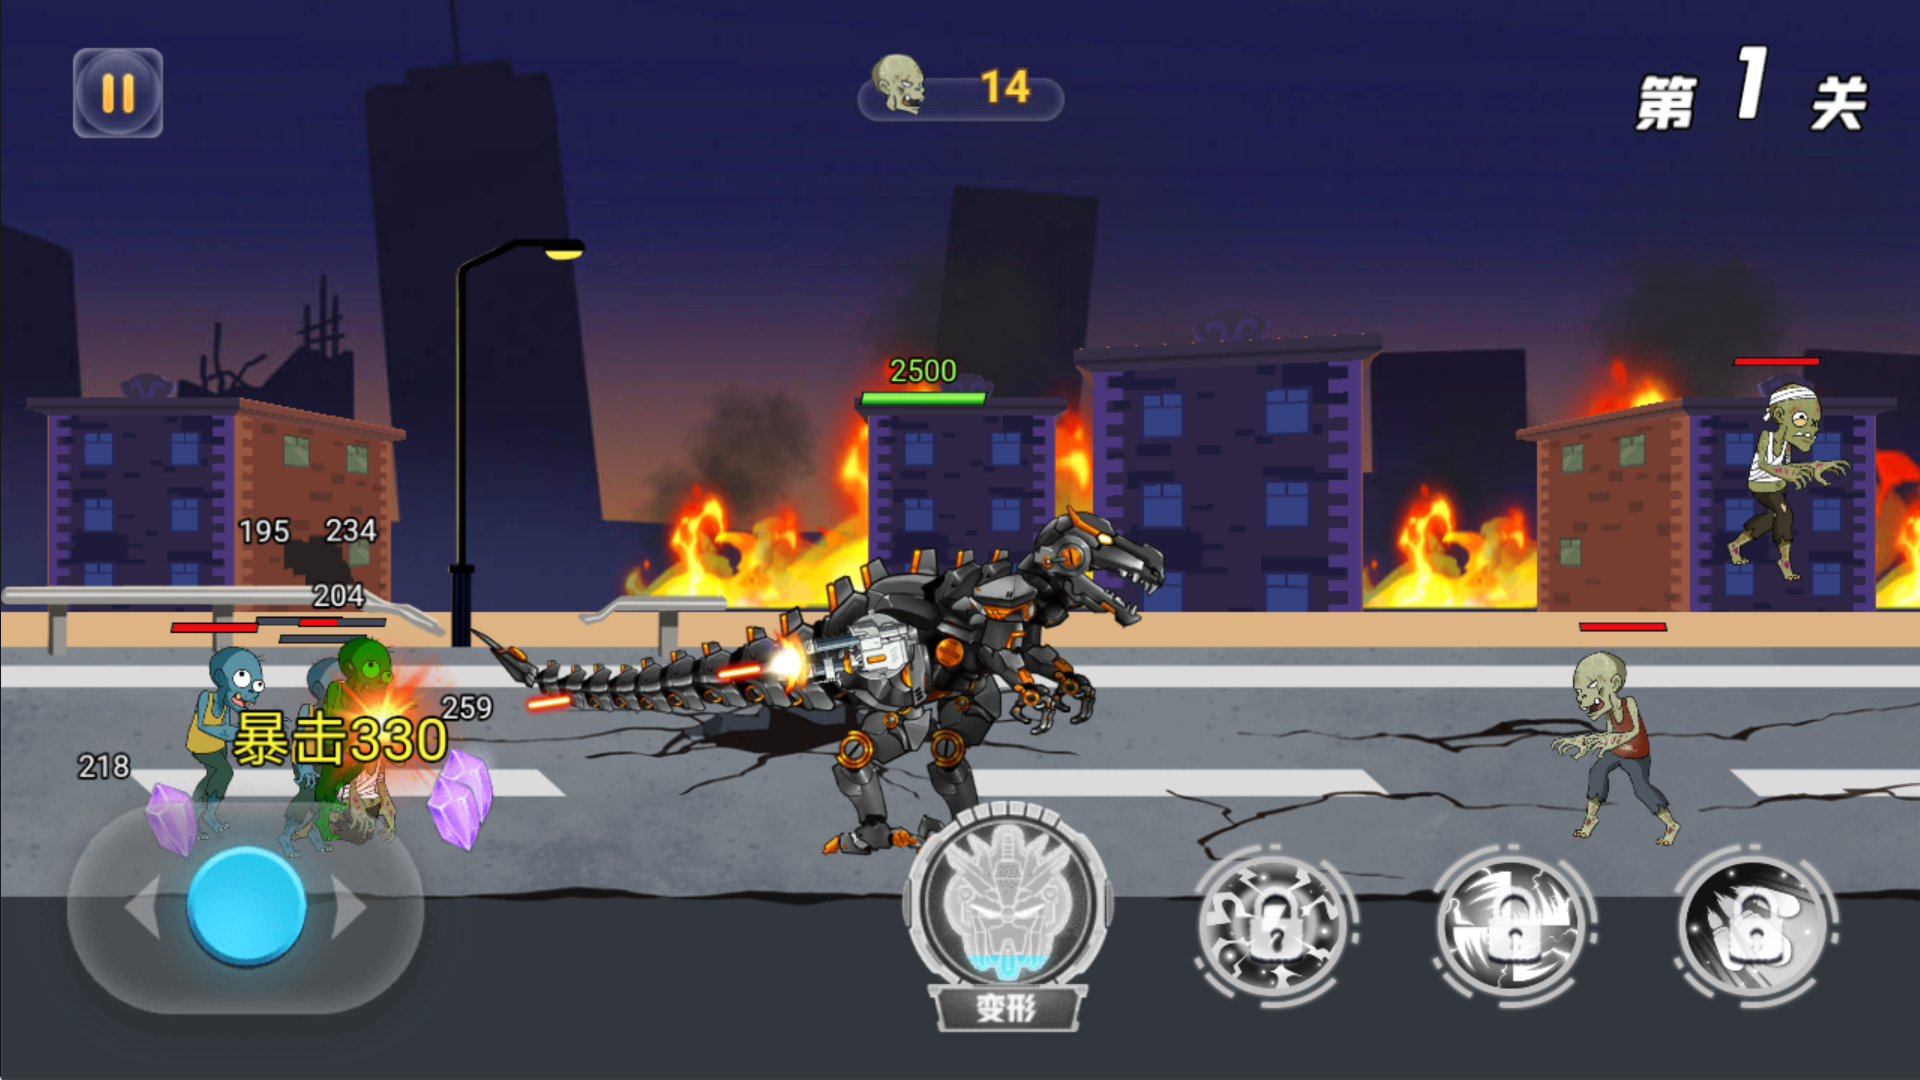 Screenshot 1 of Robot khủng long vs Zombie - Mech 1.0.0